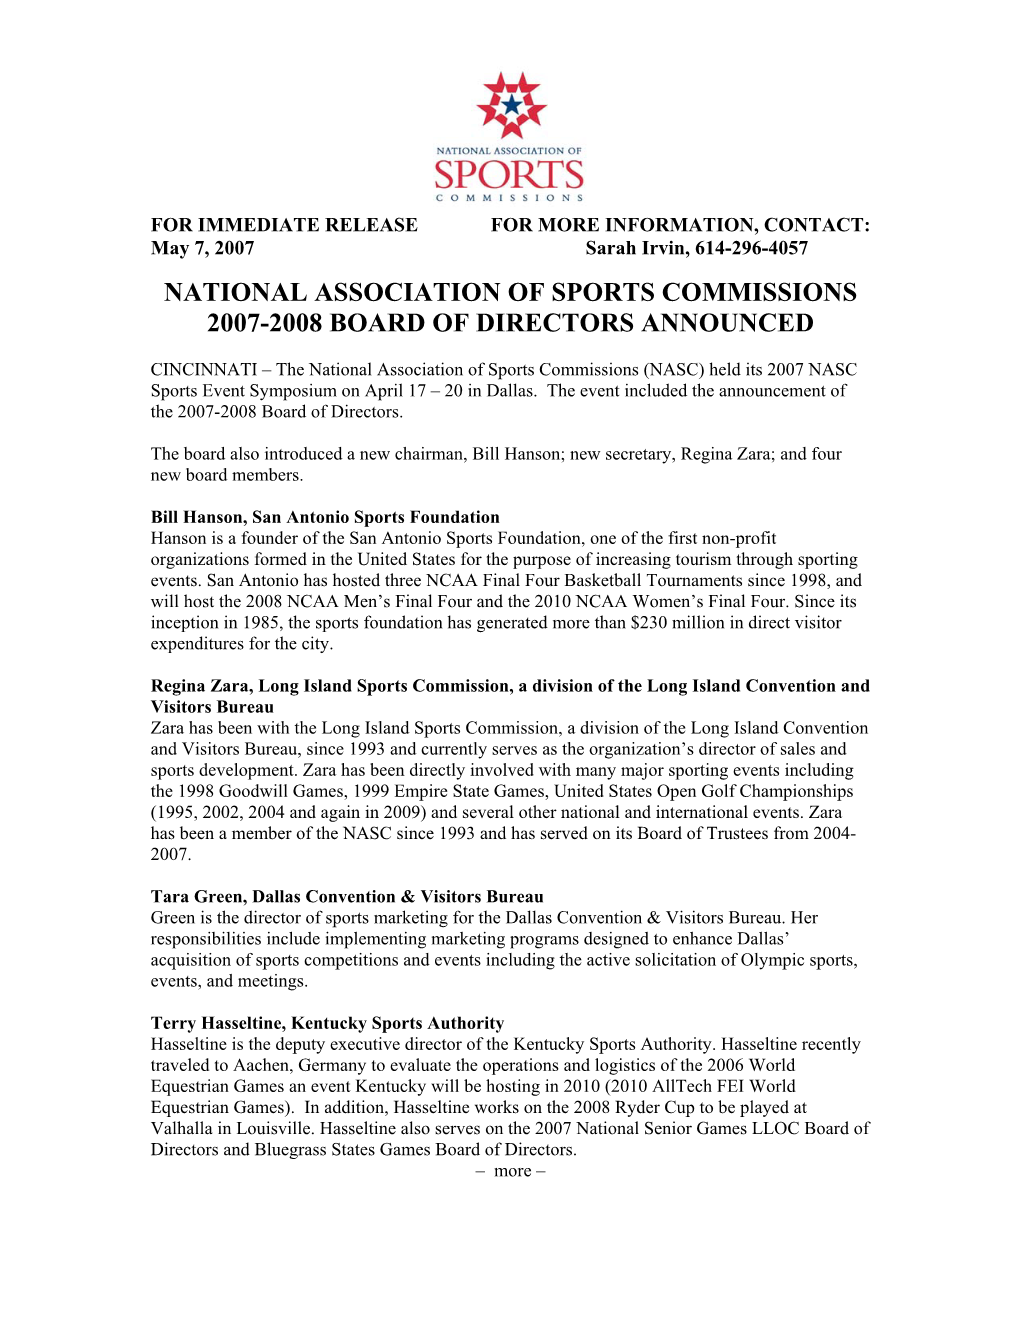 NASC 2007 Board Release